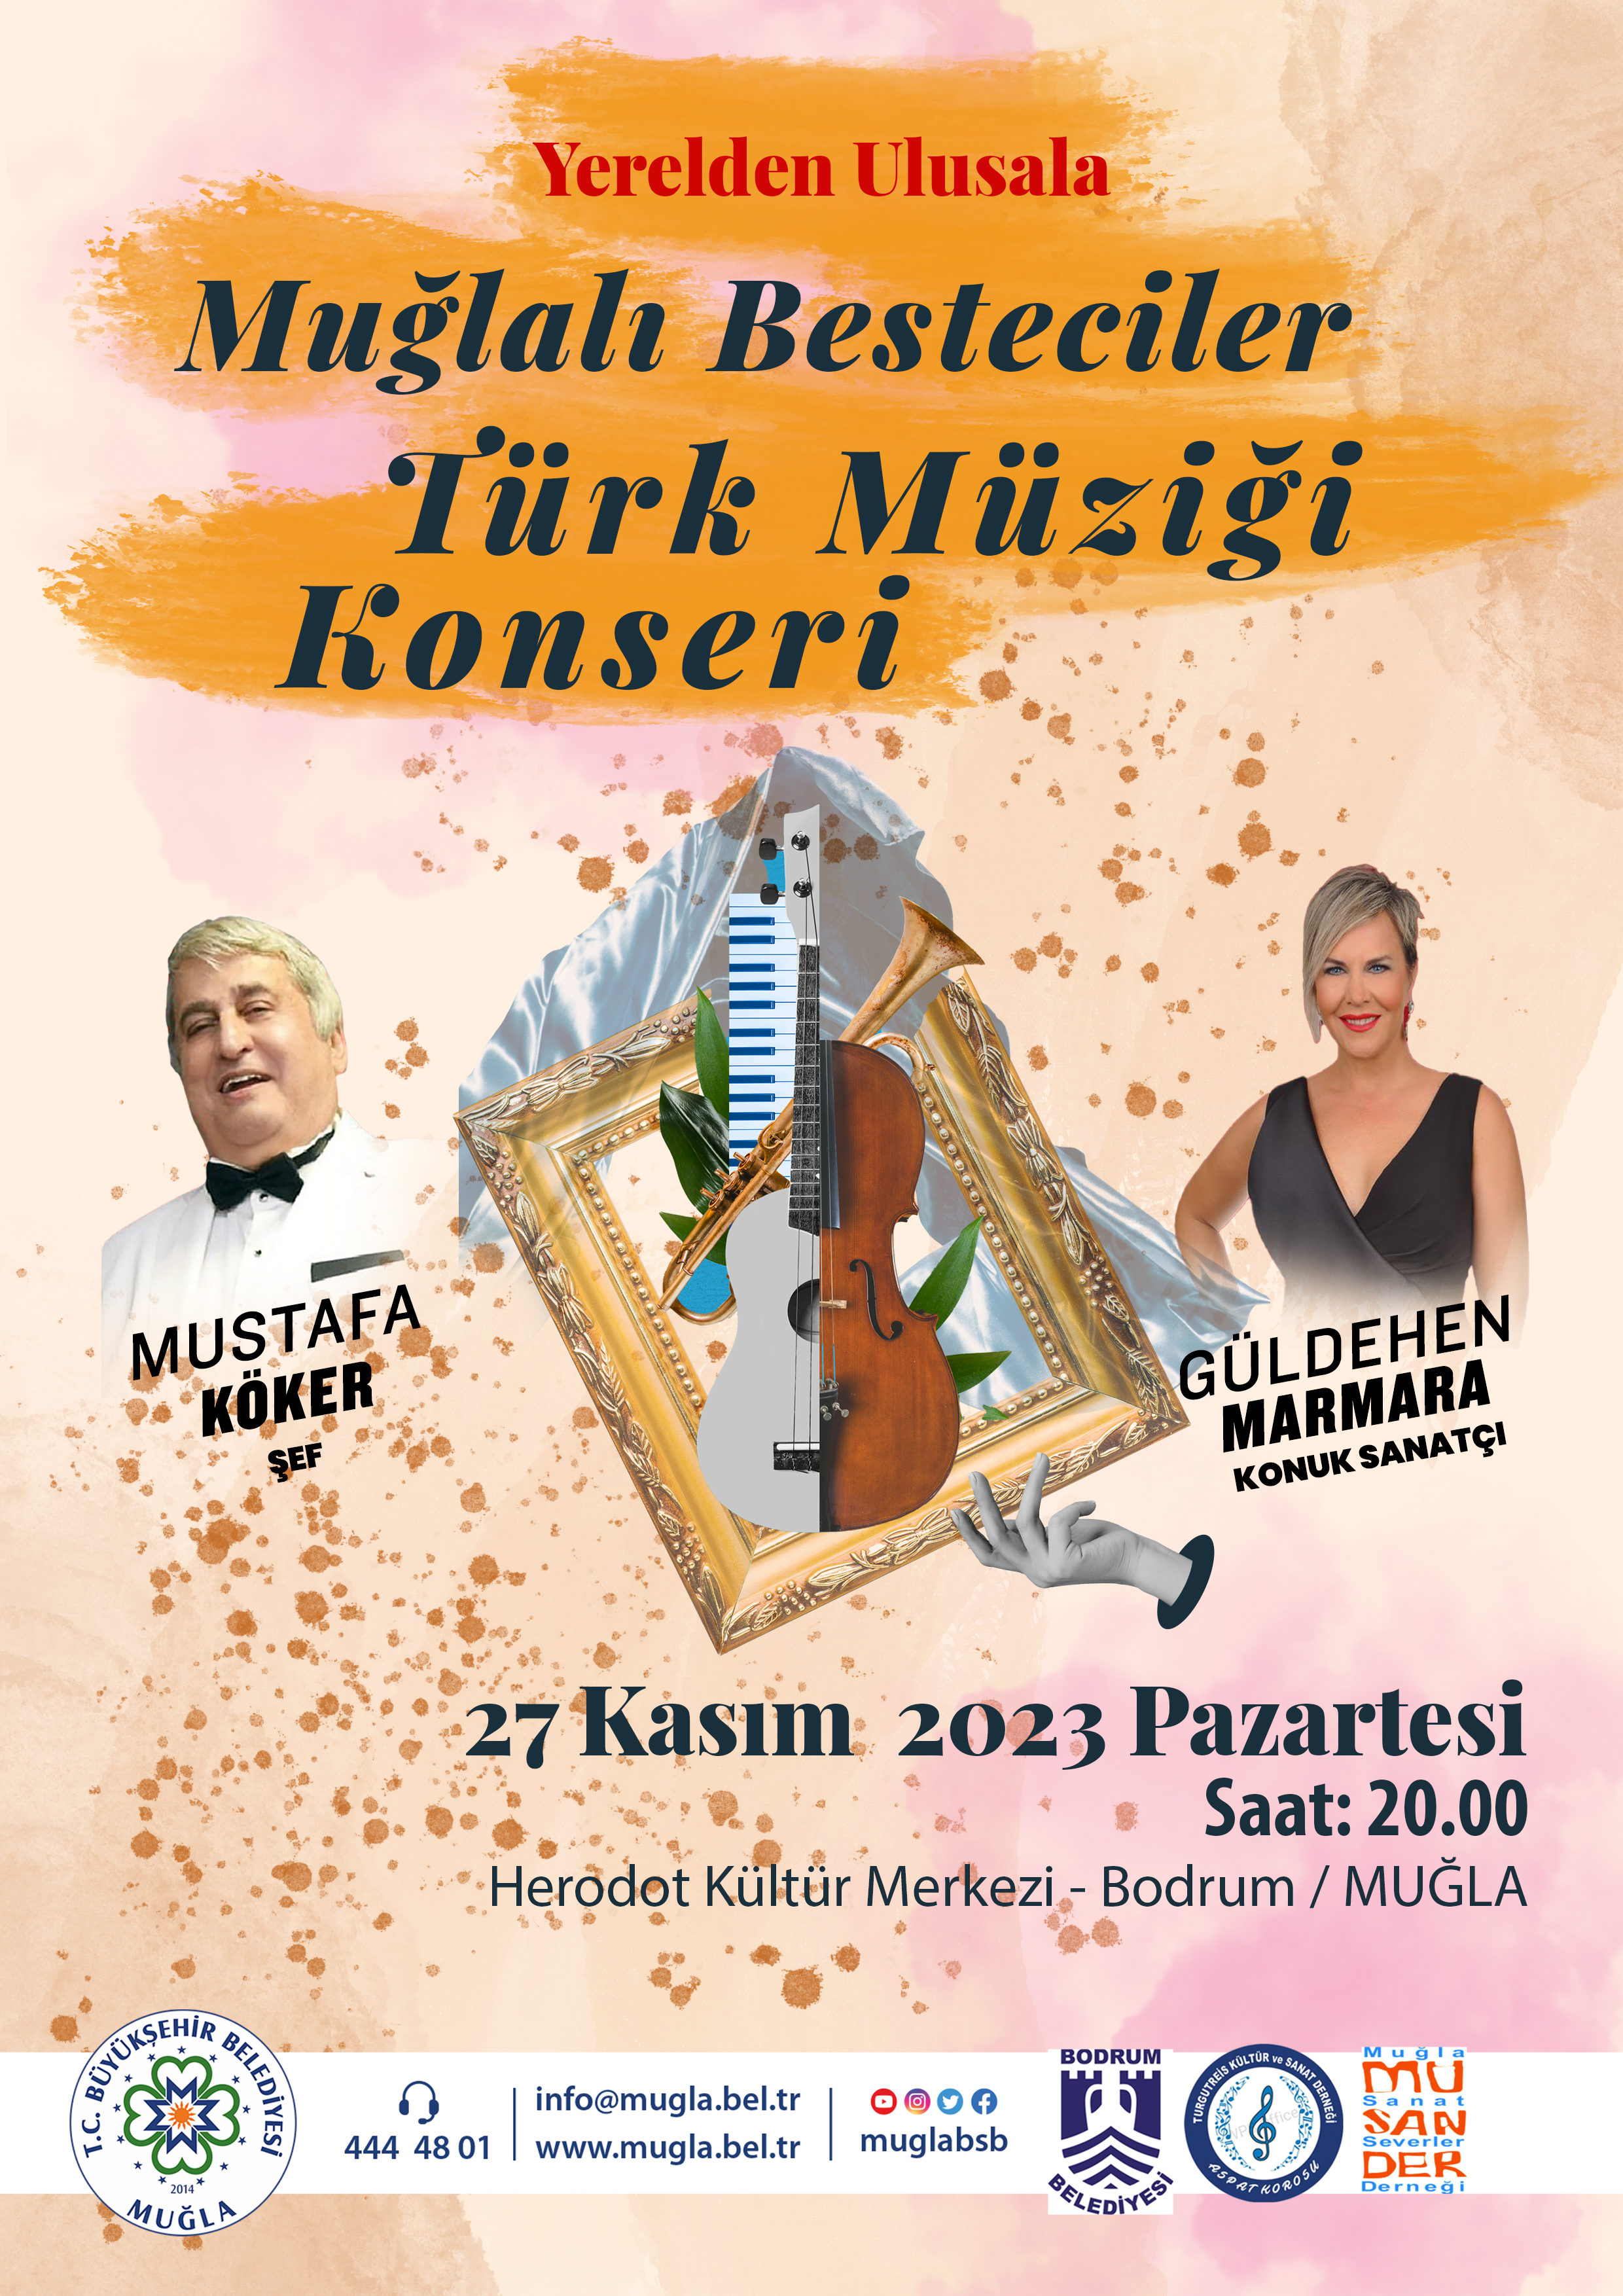 Türk Müziği Konseri Etkinliğine Davetlisiniz